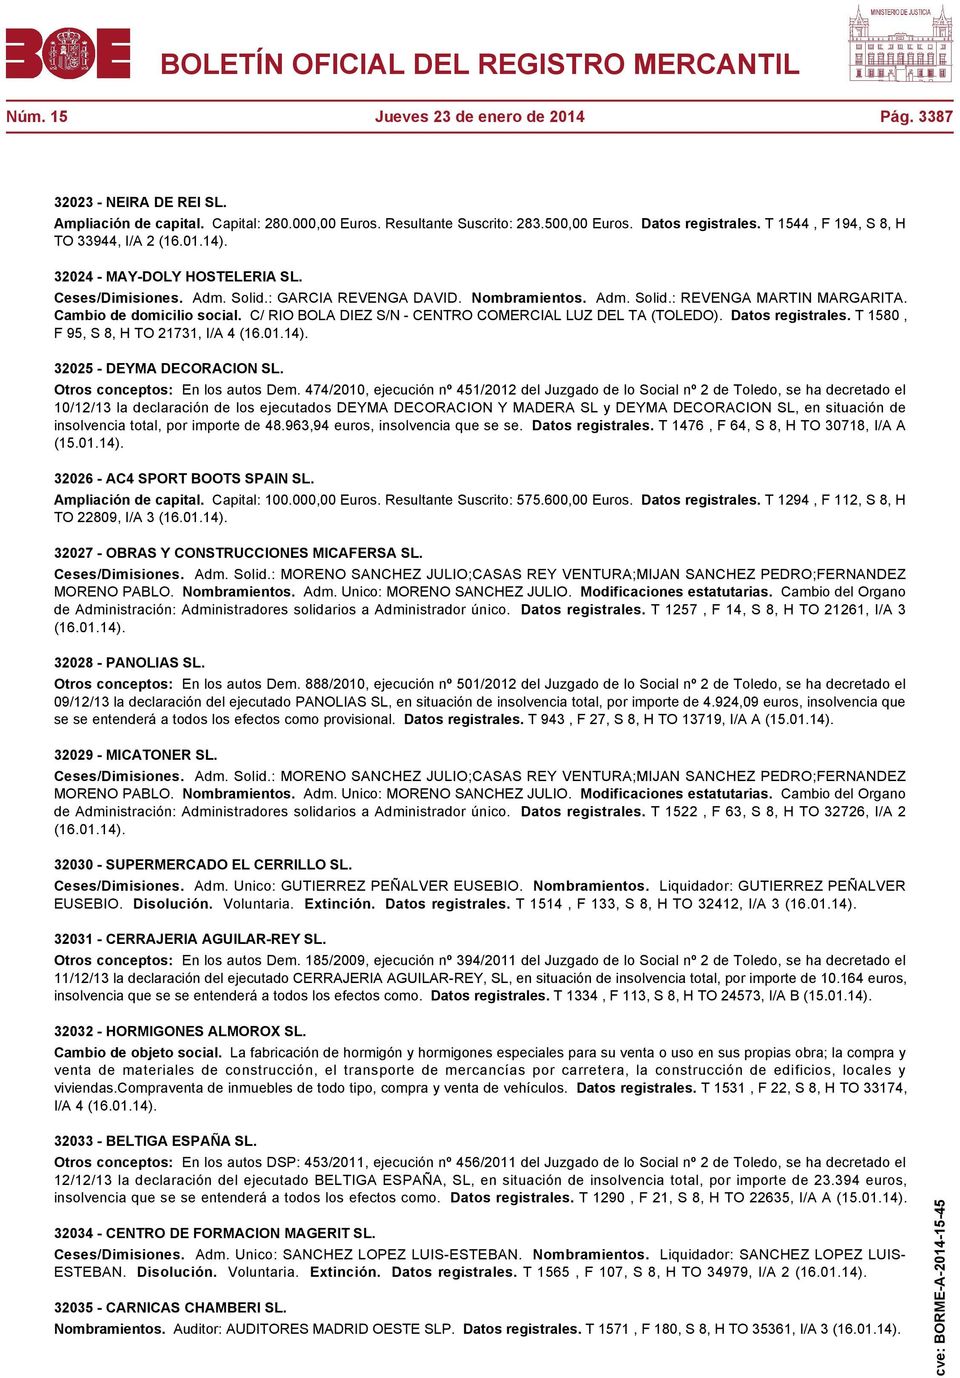 Cambio de domicilio social. C/ RIO BOLA DIEZ S/N - CENTRO COMERCIAL LUZ DEL TA (TOLEDO). Datos registrales. T 1580, F 95, S 8, H TO 21731, I/A 4 32025 - DEYMA DECORACION SL.